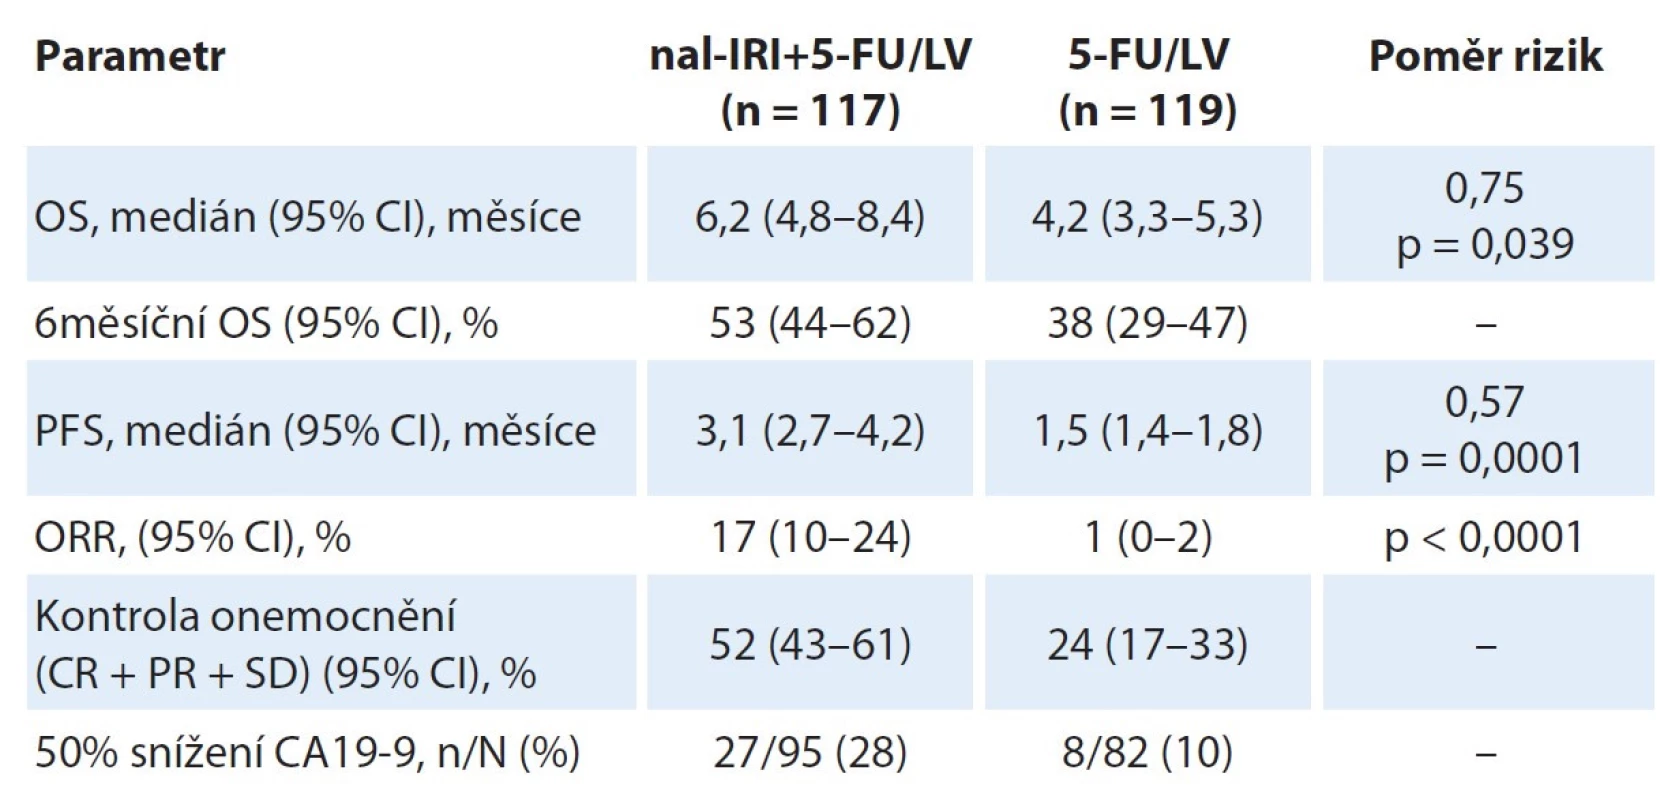 Aktualizované výsledky studie NAPOLI-1. Uvedeny jsou jen výsledky pro
experimentální rameno nal-IRI+FU/LV a kontrolní rameno 5-FU/LV.